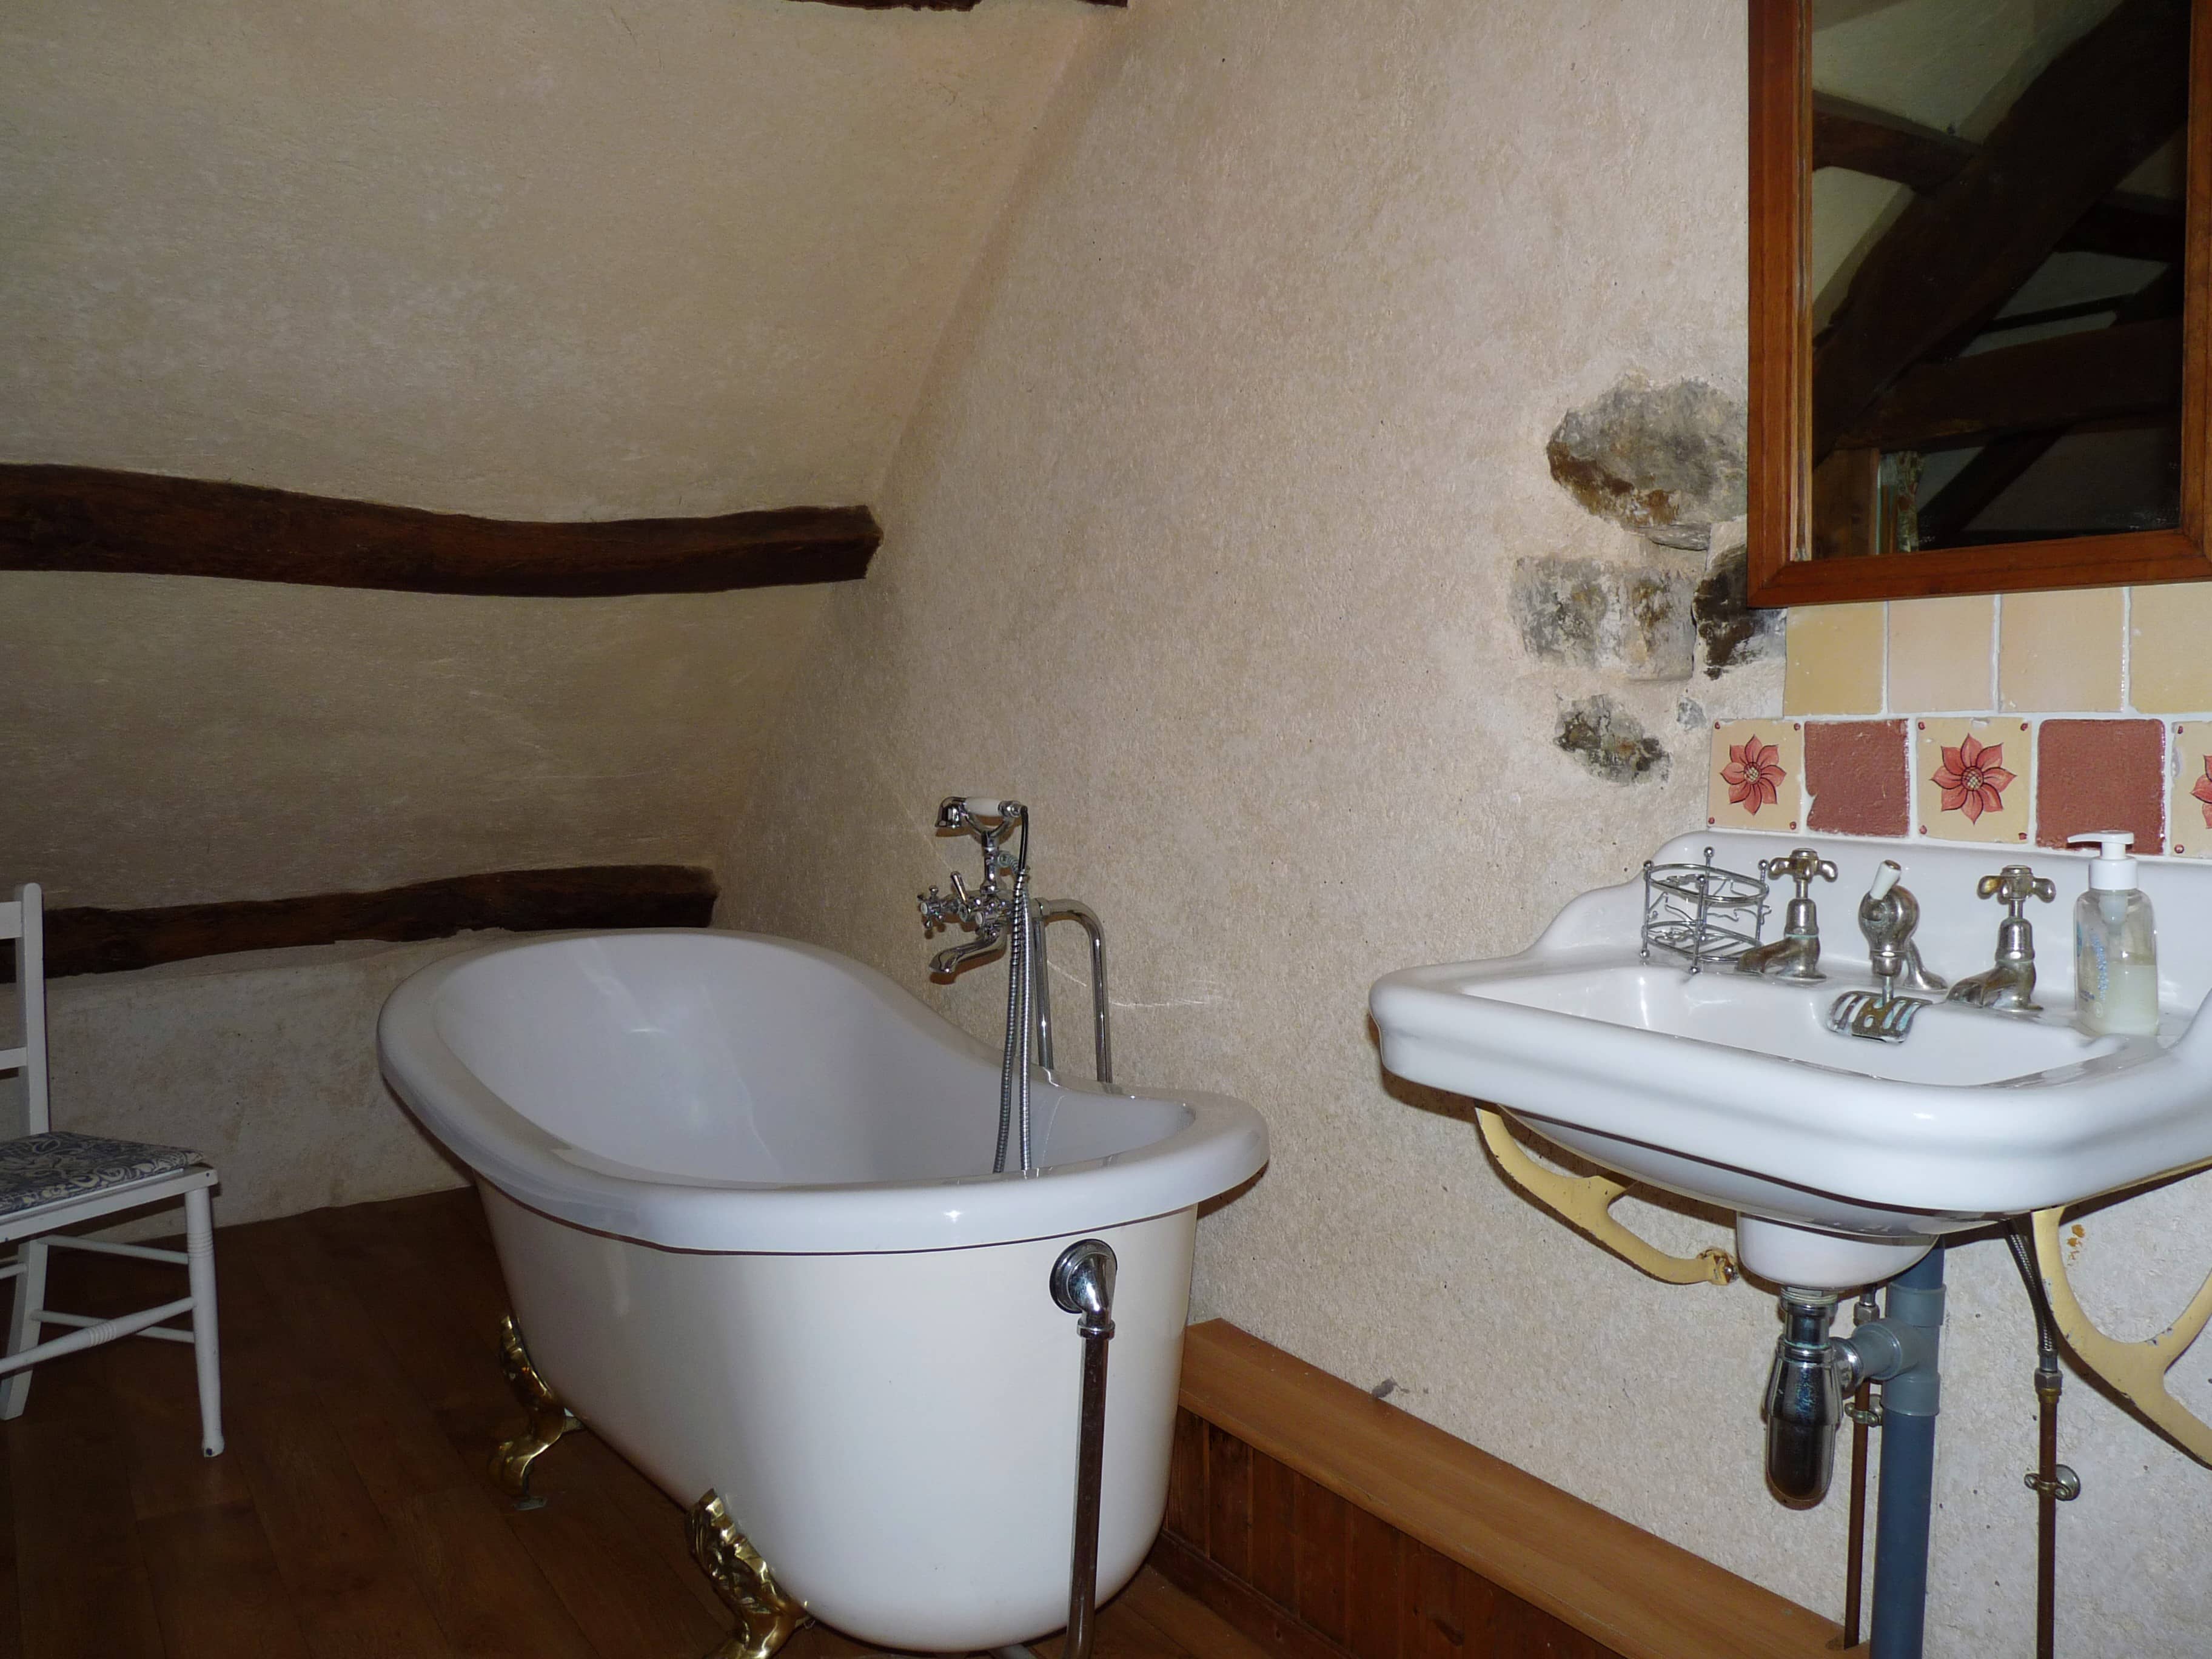 Salle de bain moderne et élégante du gîte La Julerie en Bretagne, France, avec une douche à l'italienne, des carreaux de mosaïque et des équipements haut de gamme. Idéale pour se rafraîchir après une journée de visite en Bretagne.